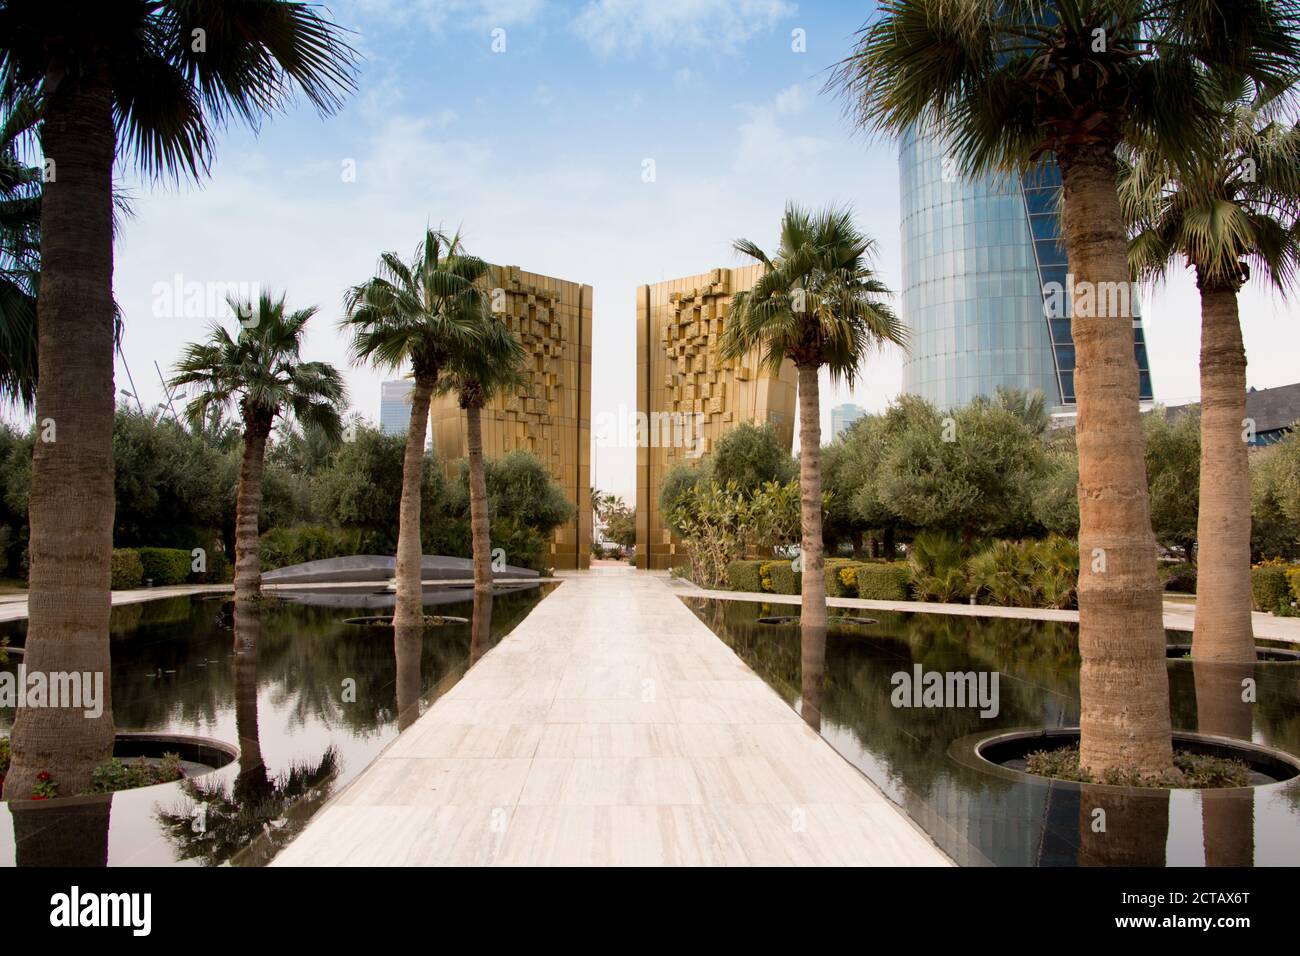 Le monument d'or pour célébrer le jubilé de la Constitution du Koweït avec palmarbres et fontaine d'eau devant. Parc Al Shaheed, Koweït. Banque D'Images